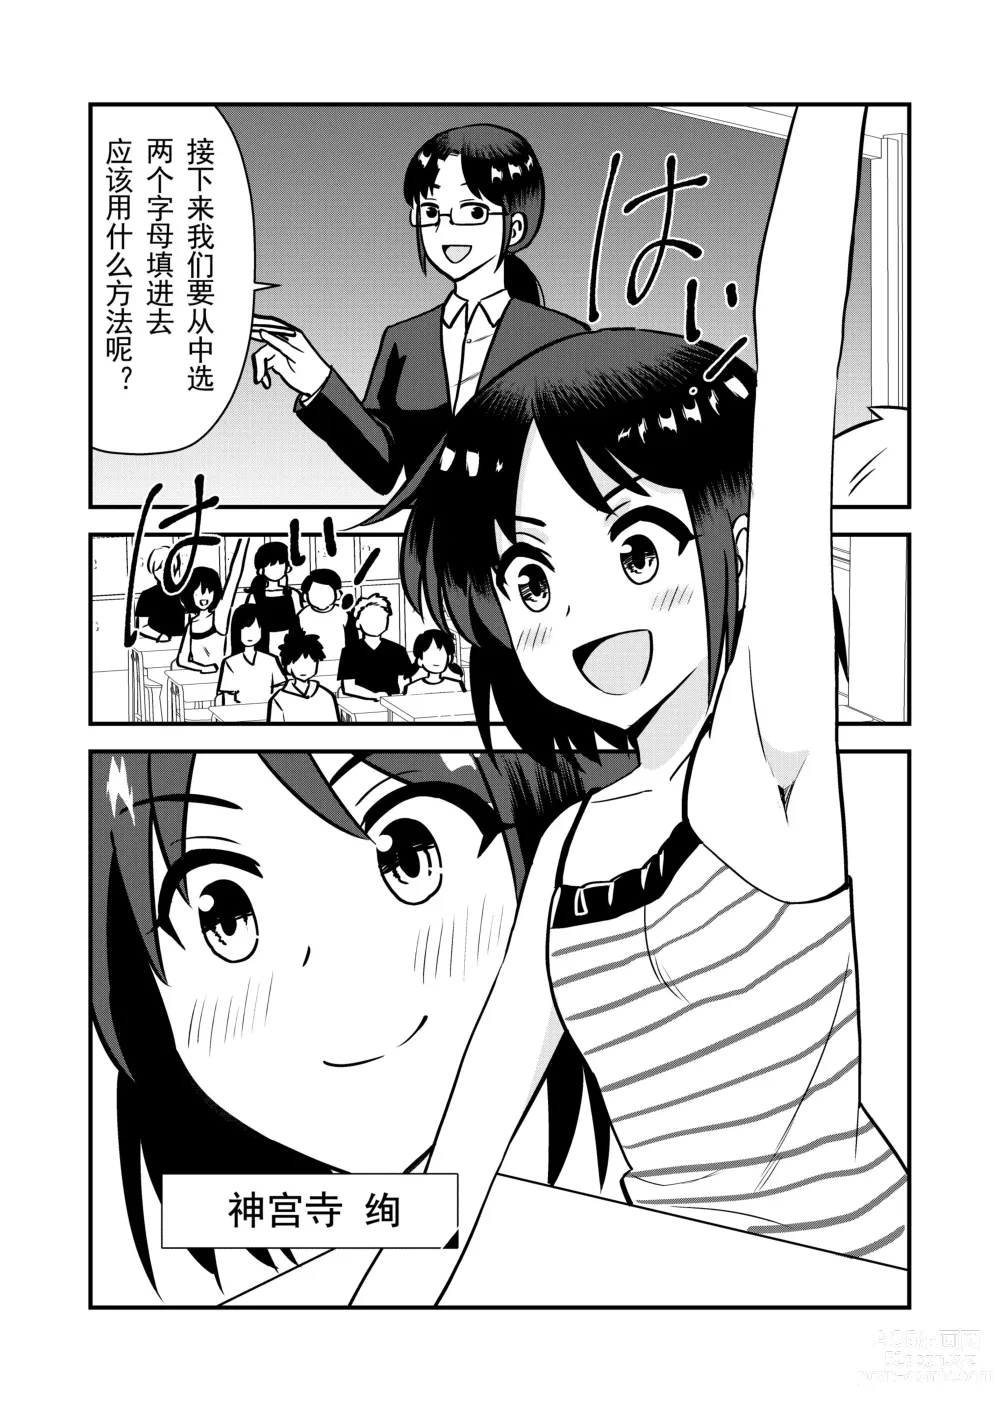 Page 4 of doujinshi 被惩罚后的当天,下半身禁止穿衣服的学校